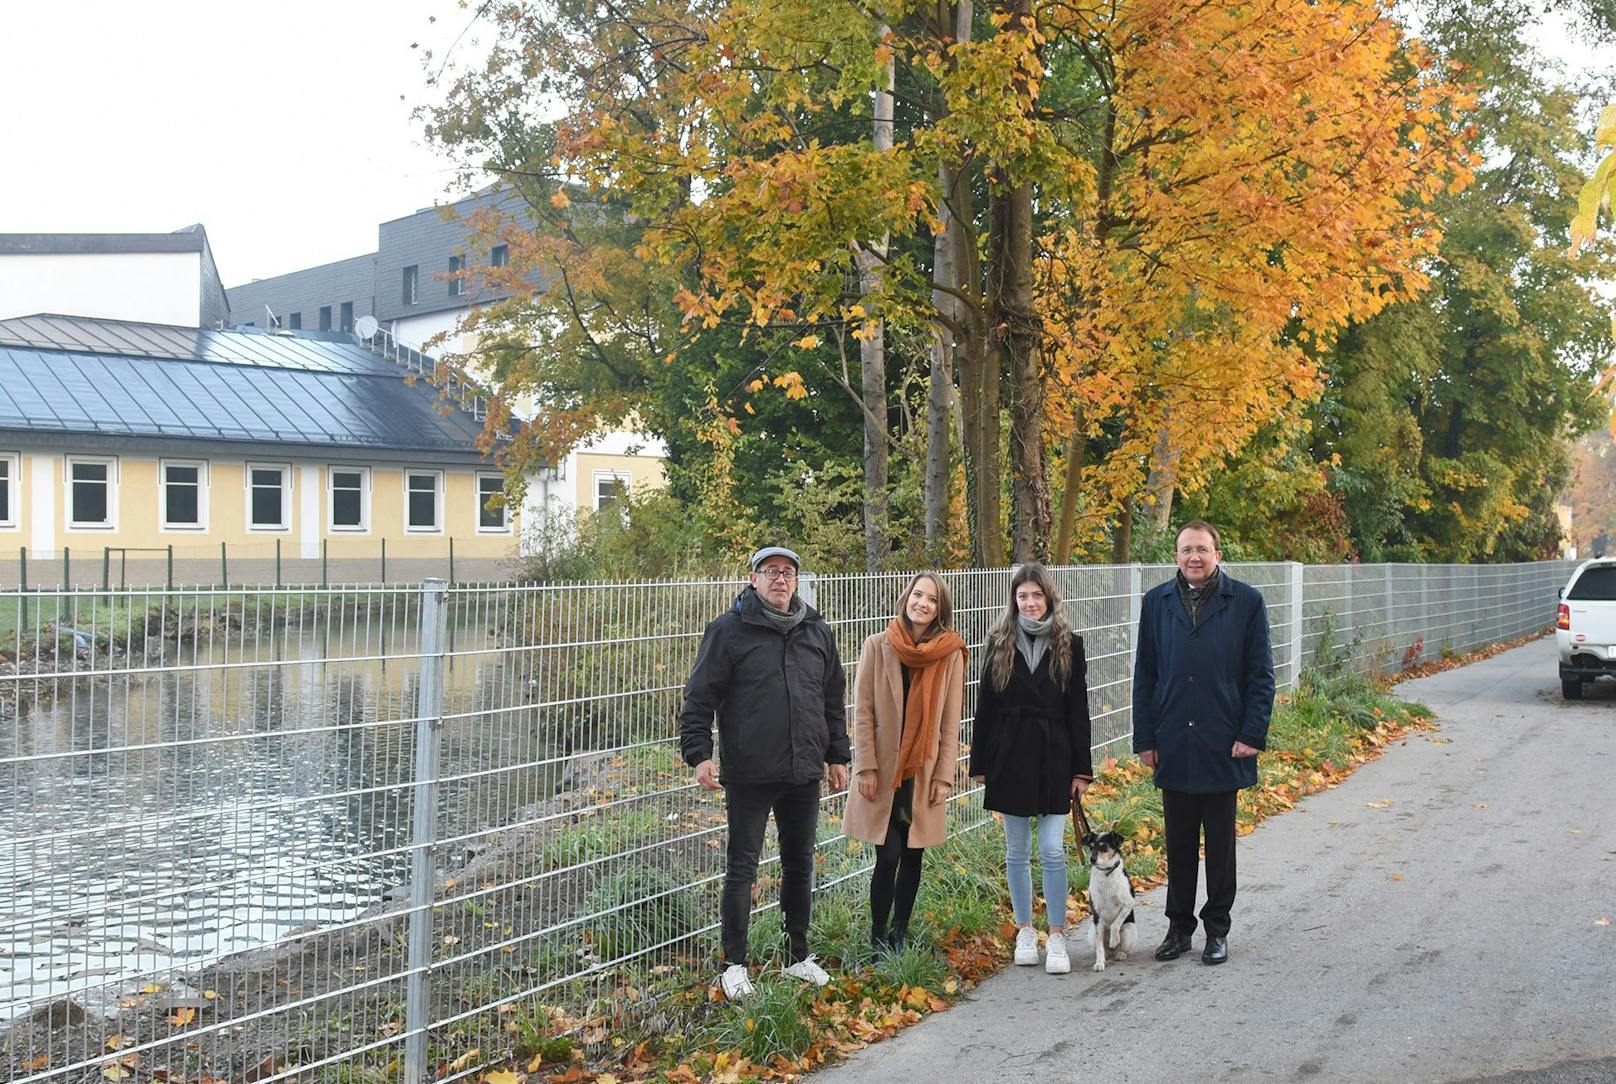 Stadtgärtner Robert Wotapek, Carina Wenda von der Stadtplanung, Bürgermeister Matthias Stadler und Michelle Bachel mit Maggy besichtigten das Areal nahe dem Mühlbach.